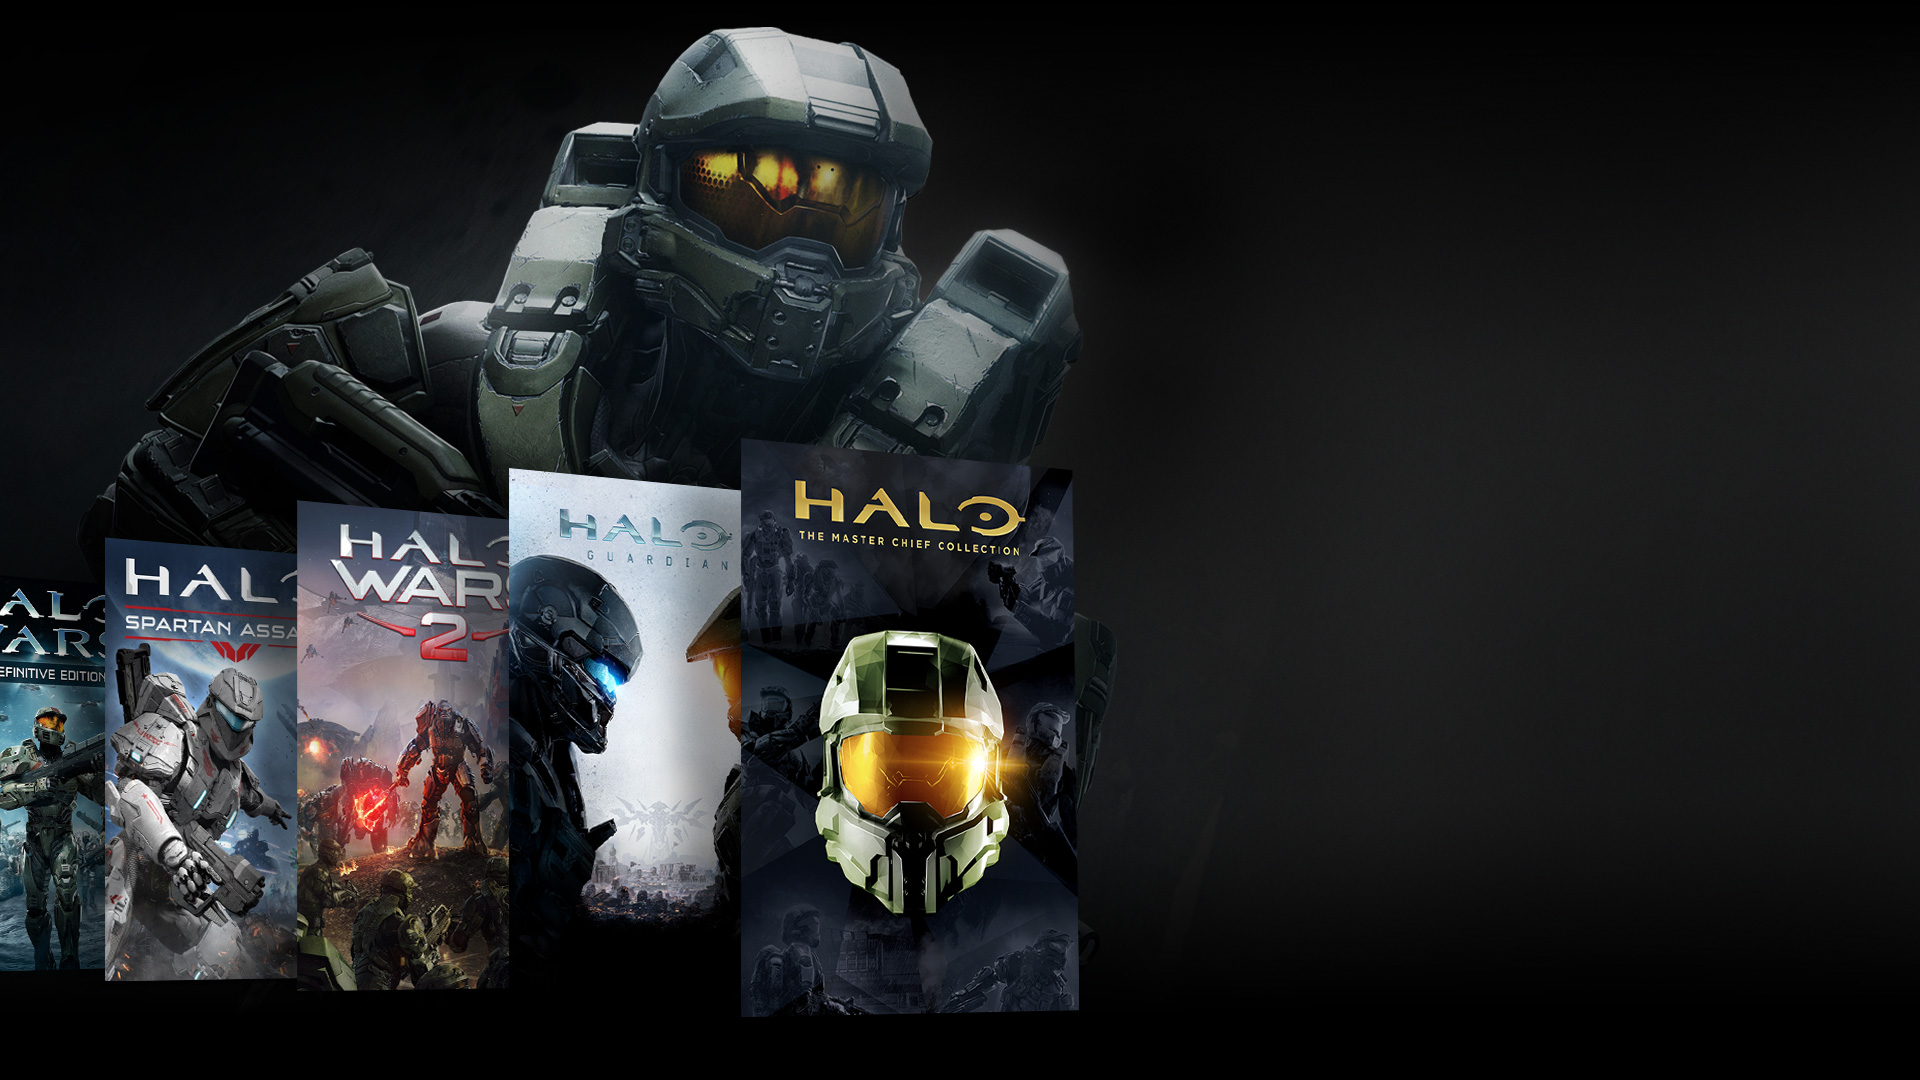 Vista frontal de un personaje de Halo de pie delante de un collage de juegos Halo